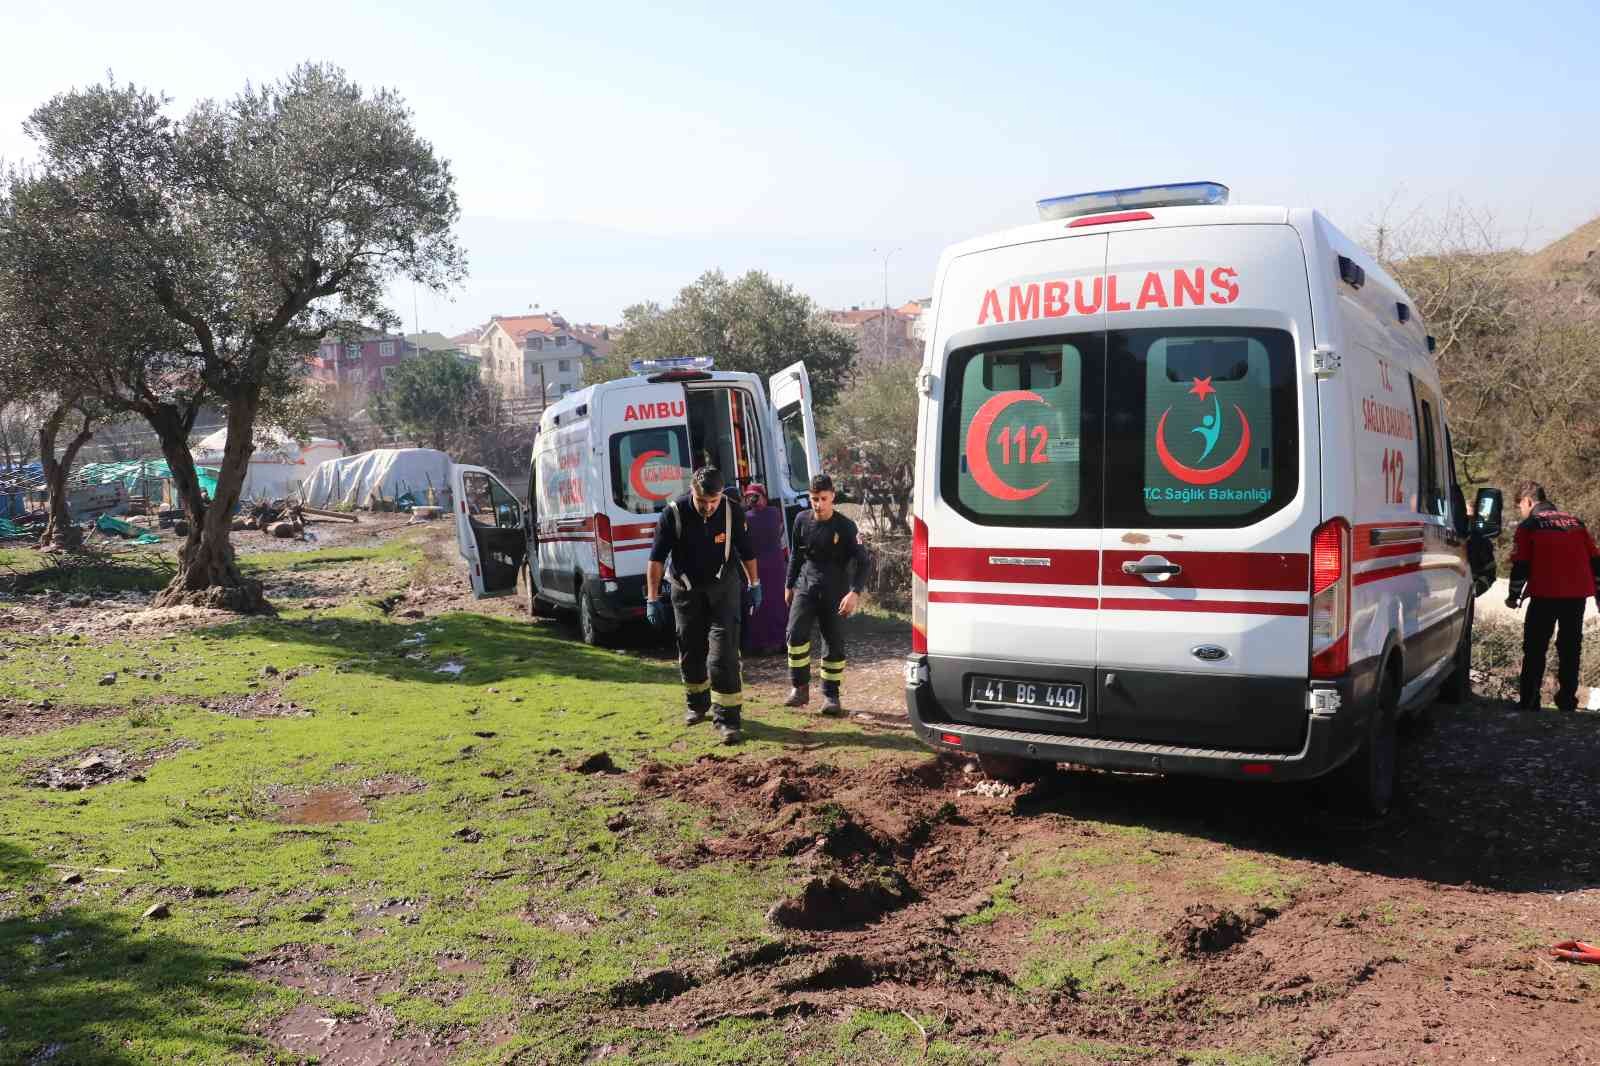 Kocaeli’nin Körfez ilçesinde hasta taşıyan ambulans çamura saplandı. Hasta, bölgeye sevk edilen bir diğer ambulans ile hastaneye ulaştırılırken ...